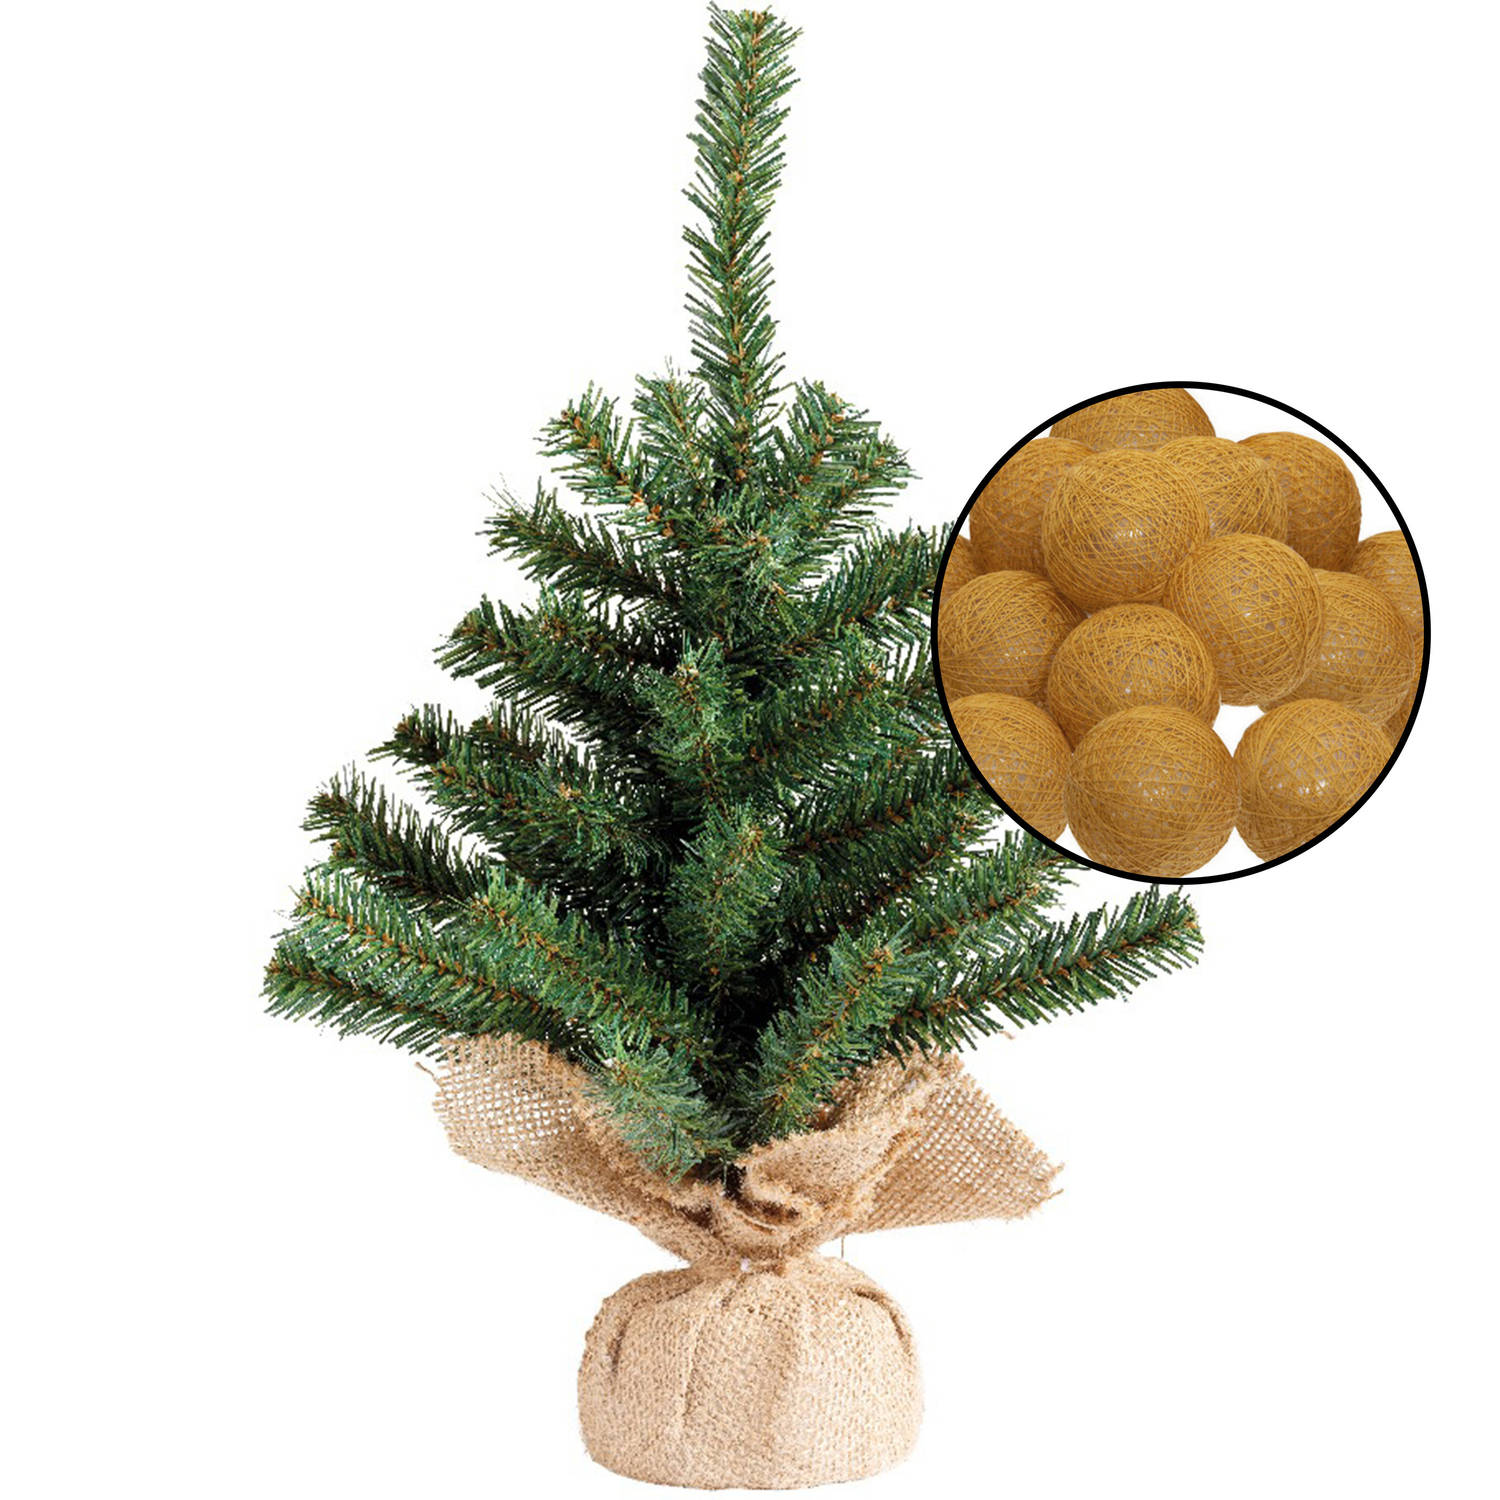 Mini kunst kerstboom groen met verlichting in jute zak H45 cm okergeel Kunstkerstboom